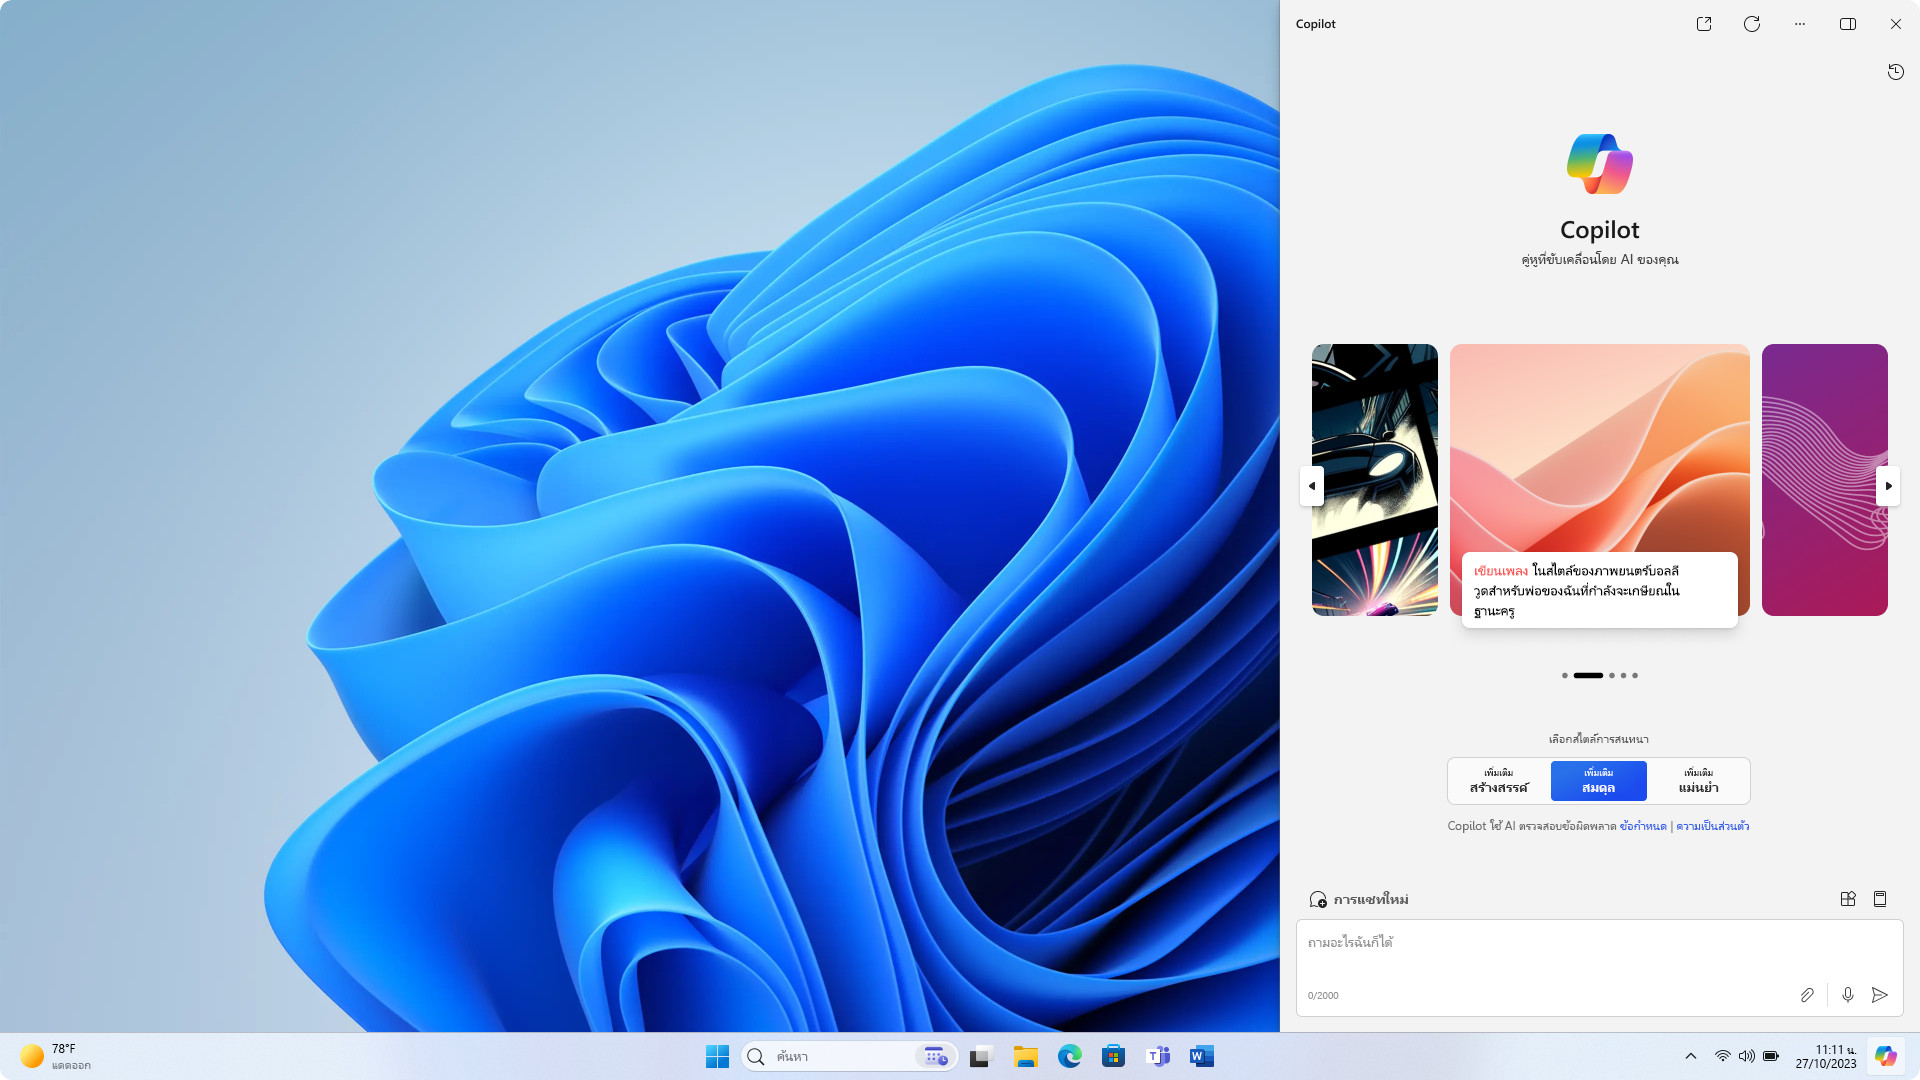 ภาพหน้าจอของเดสก์ท็อป Windows ที่ใช้ธีมสีอ่อนที่มี Copilot ในแถบด้านข้างของ Windows แสดงอยู่ ซึ่งตรงกับธีม